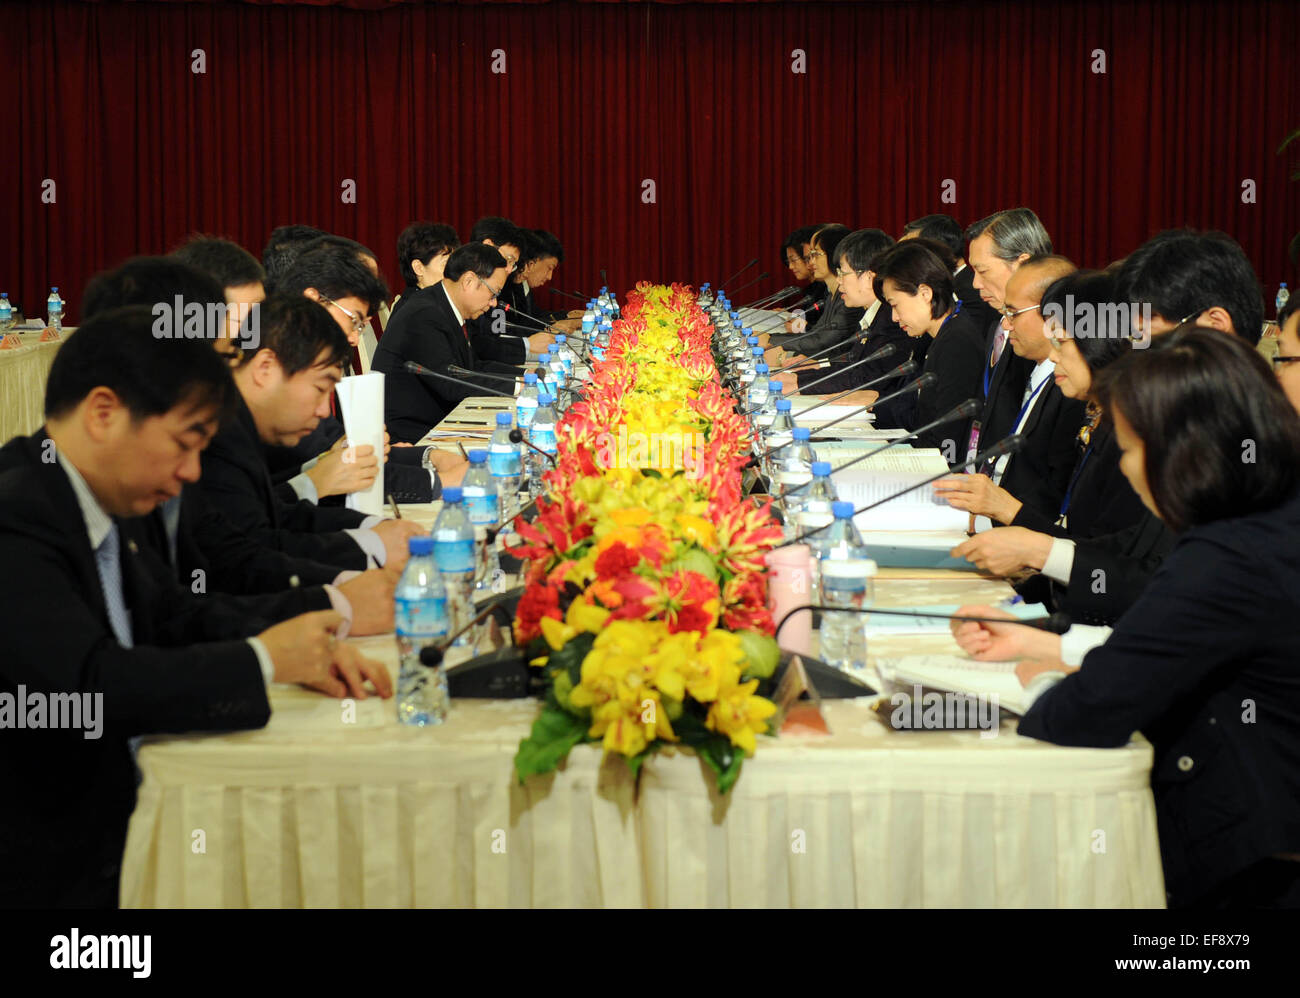 (150129) -- Paris, le 29 janvier 2015 (AFP) - Des représentants de participer à la septième réunion ordinaire du Comité de coopération économique de Détroit (ECC) à Taipei, Taiwan de la Chine du sud-est, le 29 janvier 2015. La septième réunion ordinaire ECC Détroit a été organisé conjointement par la partie continentale de Chine de l'Association pour les relations à travers le détroit de Taiwan (ARATS) et le détroit de Taiwan (SEF) Exchange Foundation jeudi à Taipei. (Xinhua/Shen Hong) (zwx) Banque D'Images